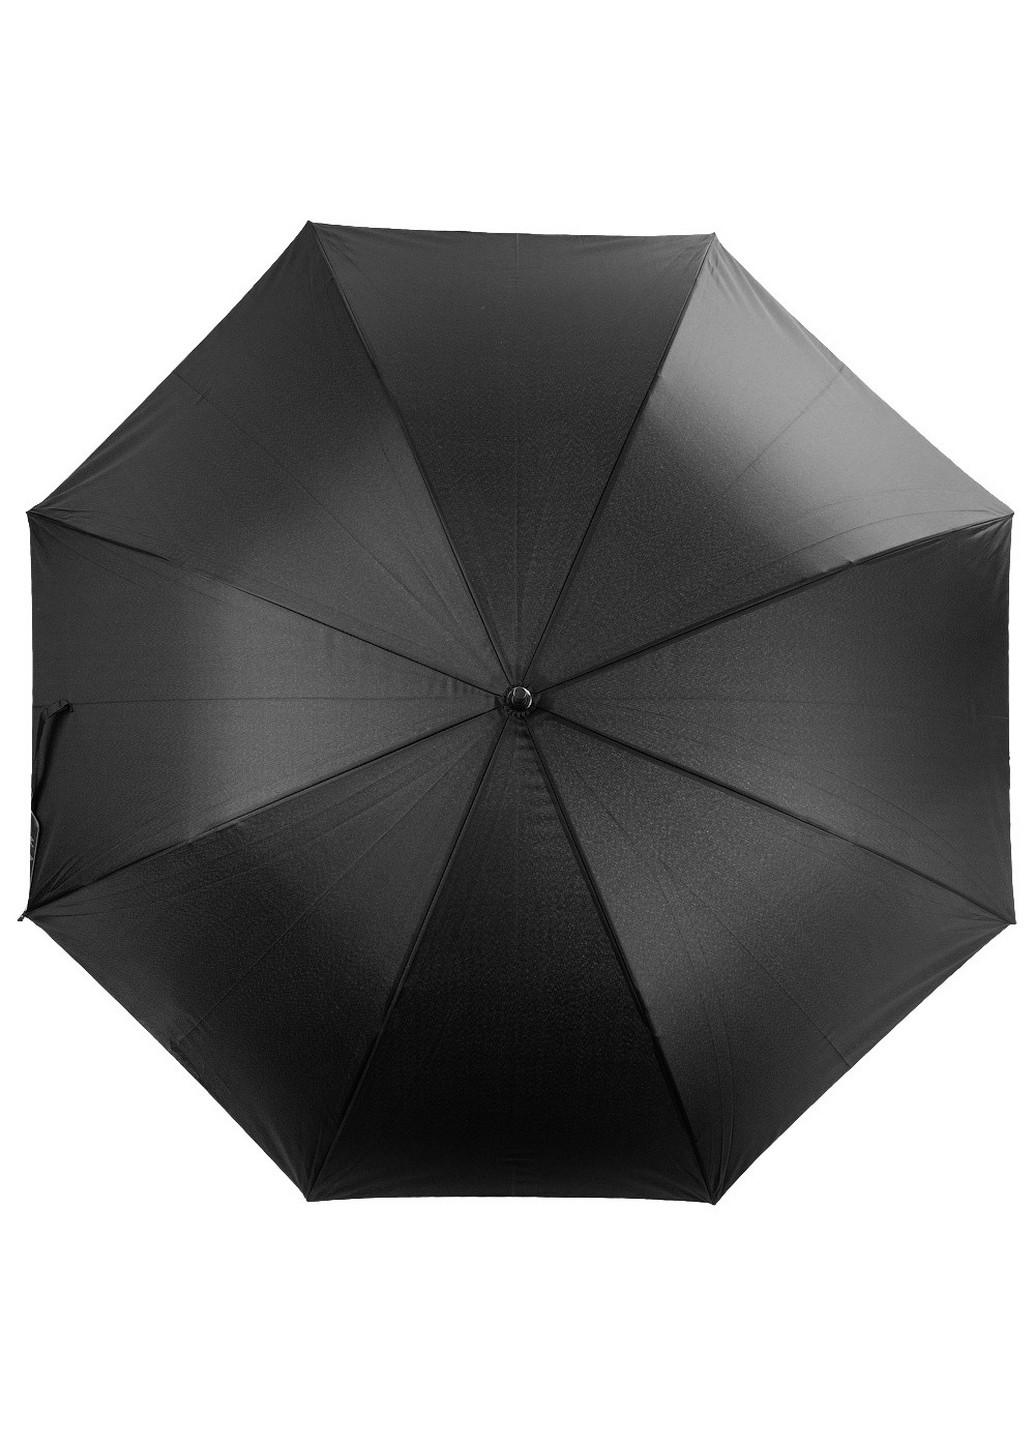 Мужской зонт-трость полуавтомат 112 см ArtRain (260330853)